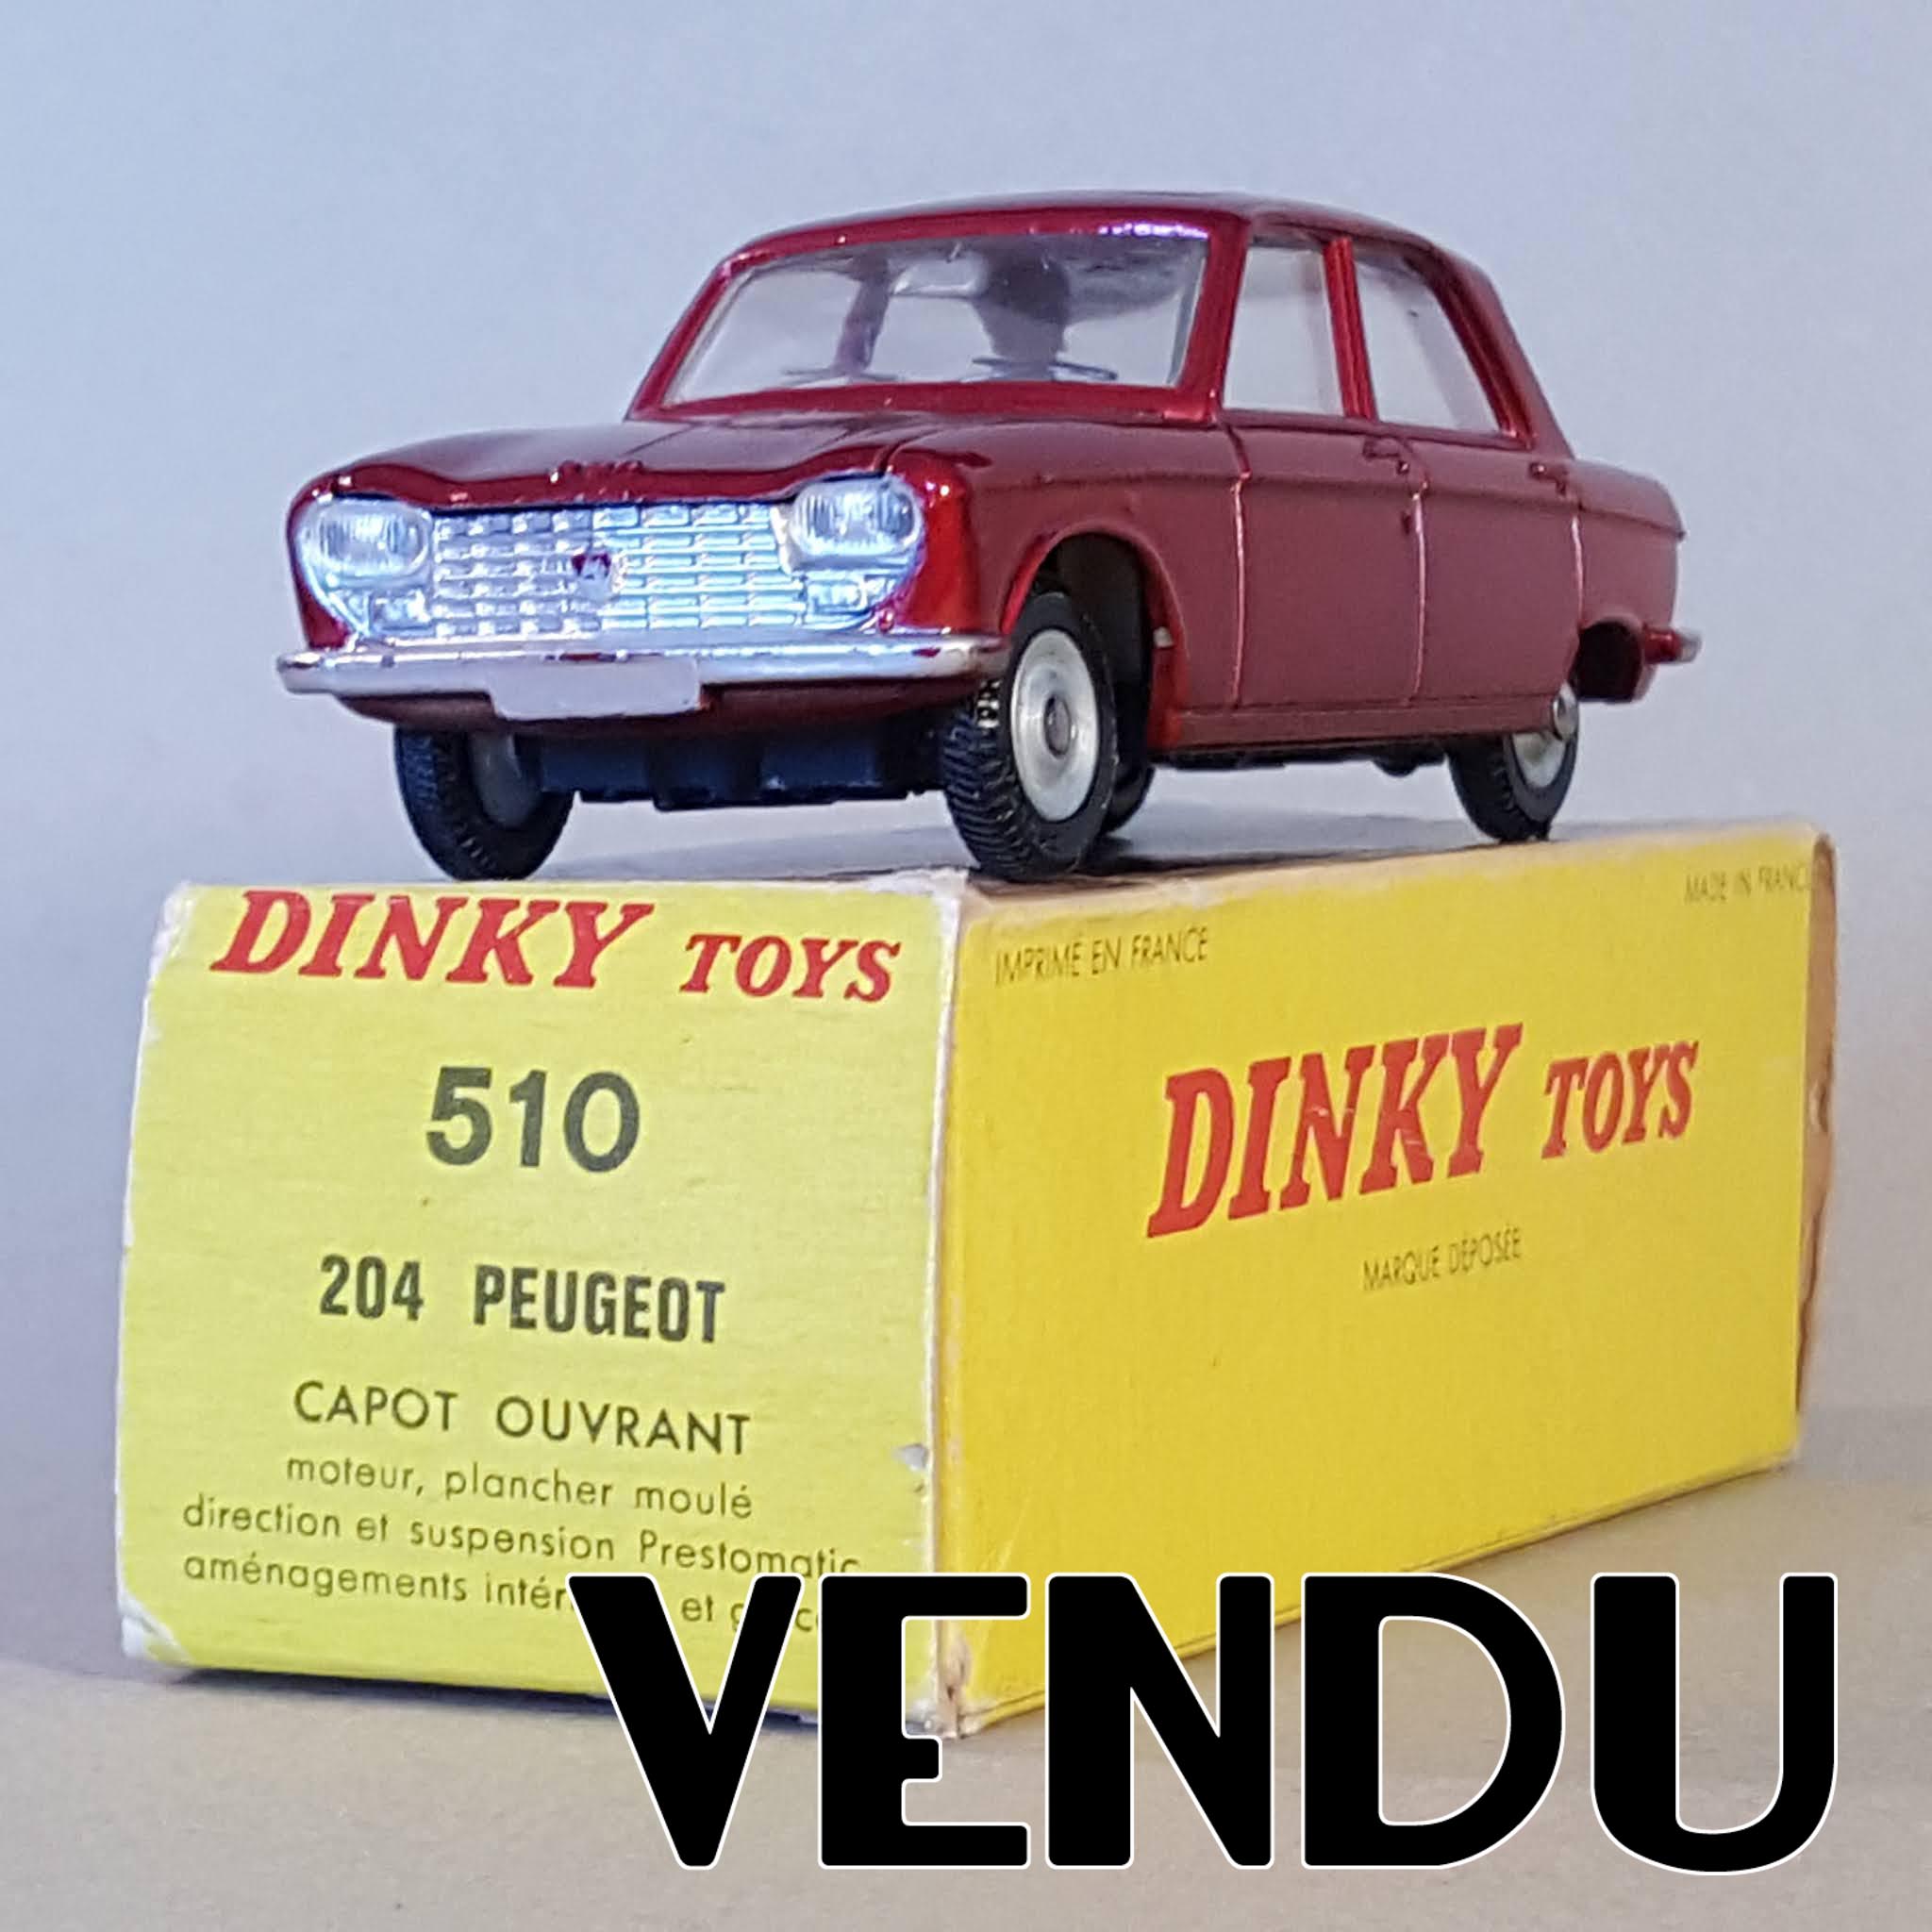 AU JOUET PARISIEN: Dinky Toys France 510 Peugeot 204